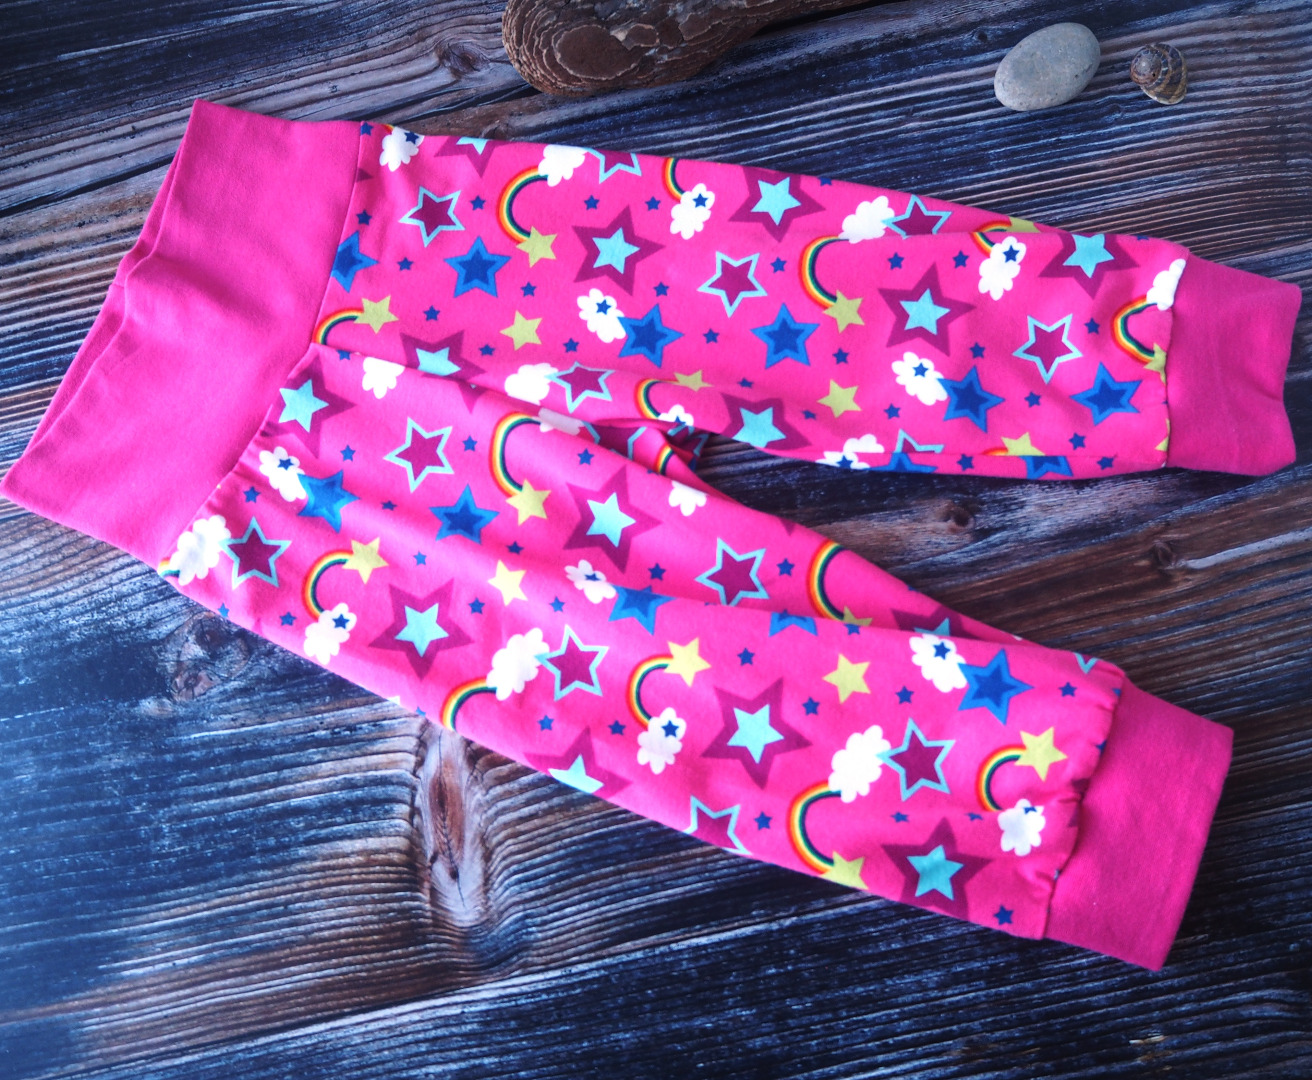 Pumphose 3/4 Länge für Kinder kurze Pumphose für kleine Mädchen in pink gemustert mit Regenbögen und Sternen Größe 110 - 116 3